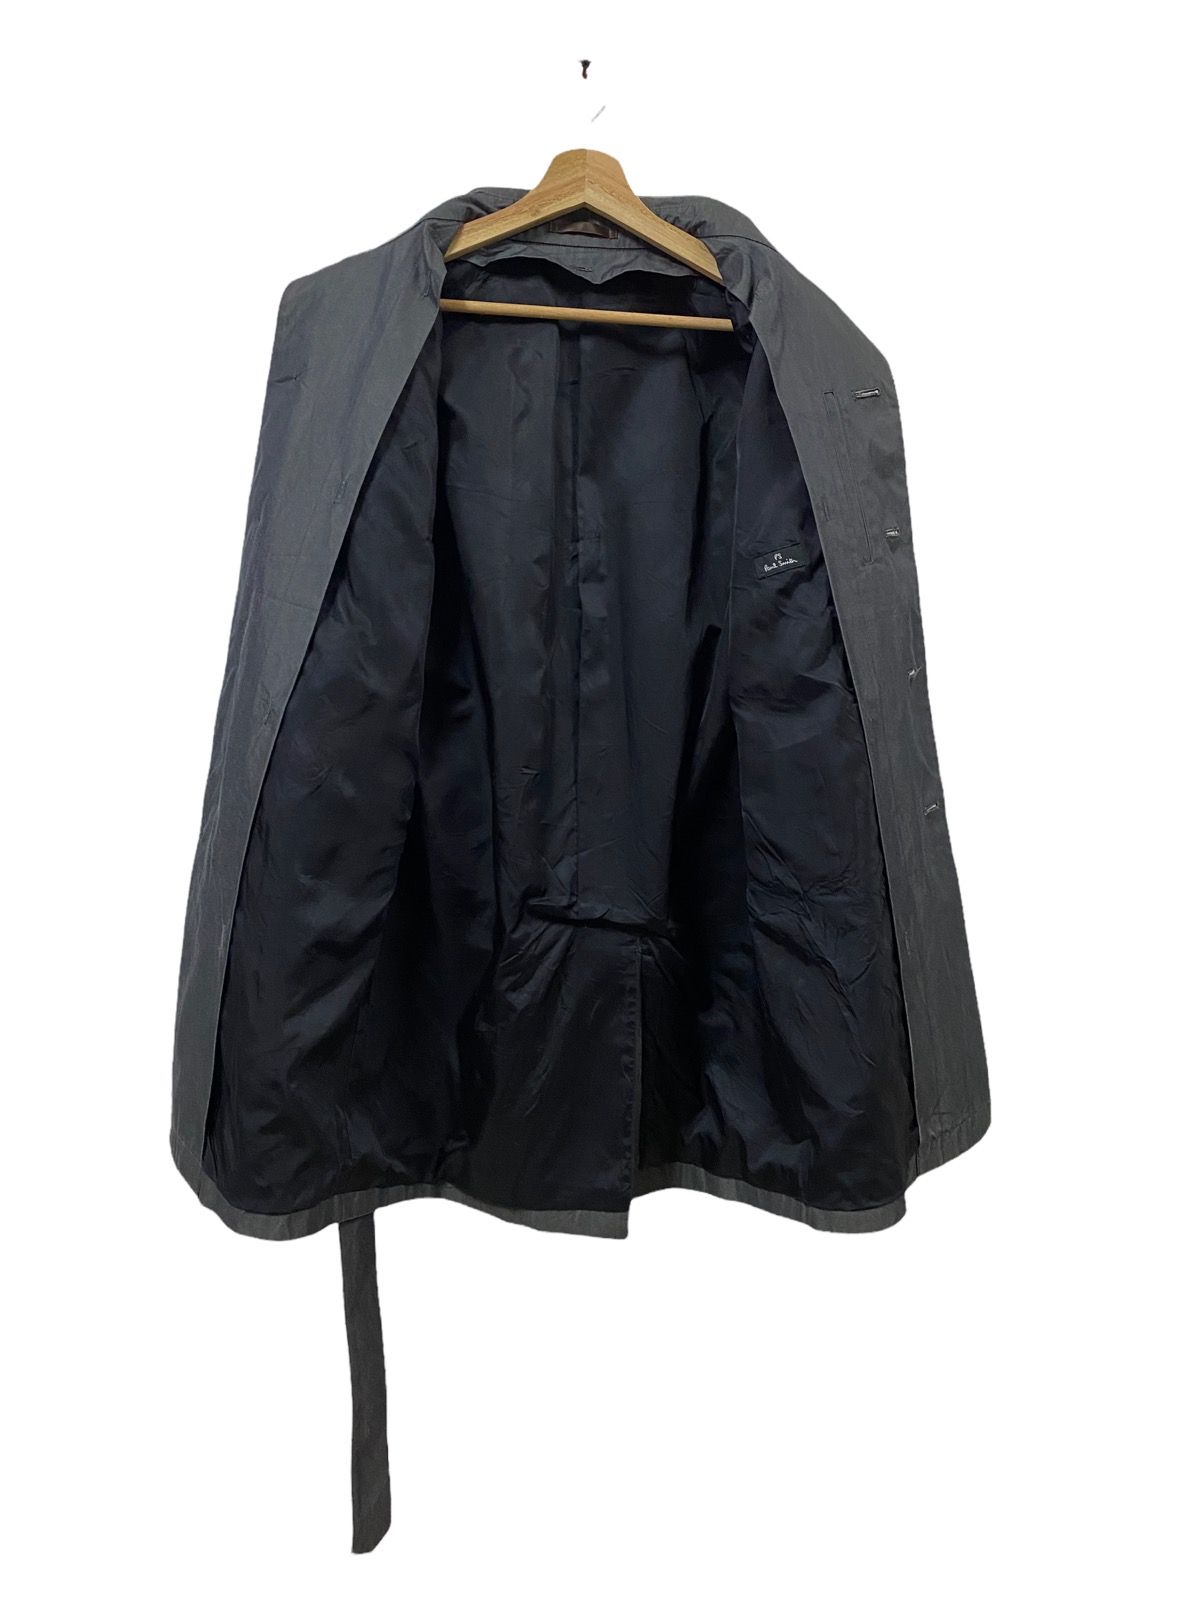 PS Paul Smith Trech Coat Grey Jacket - 9